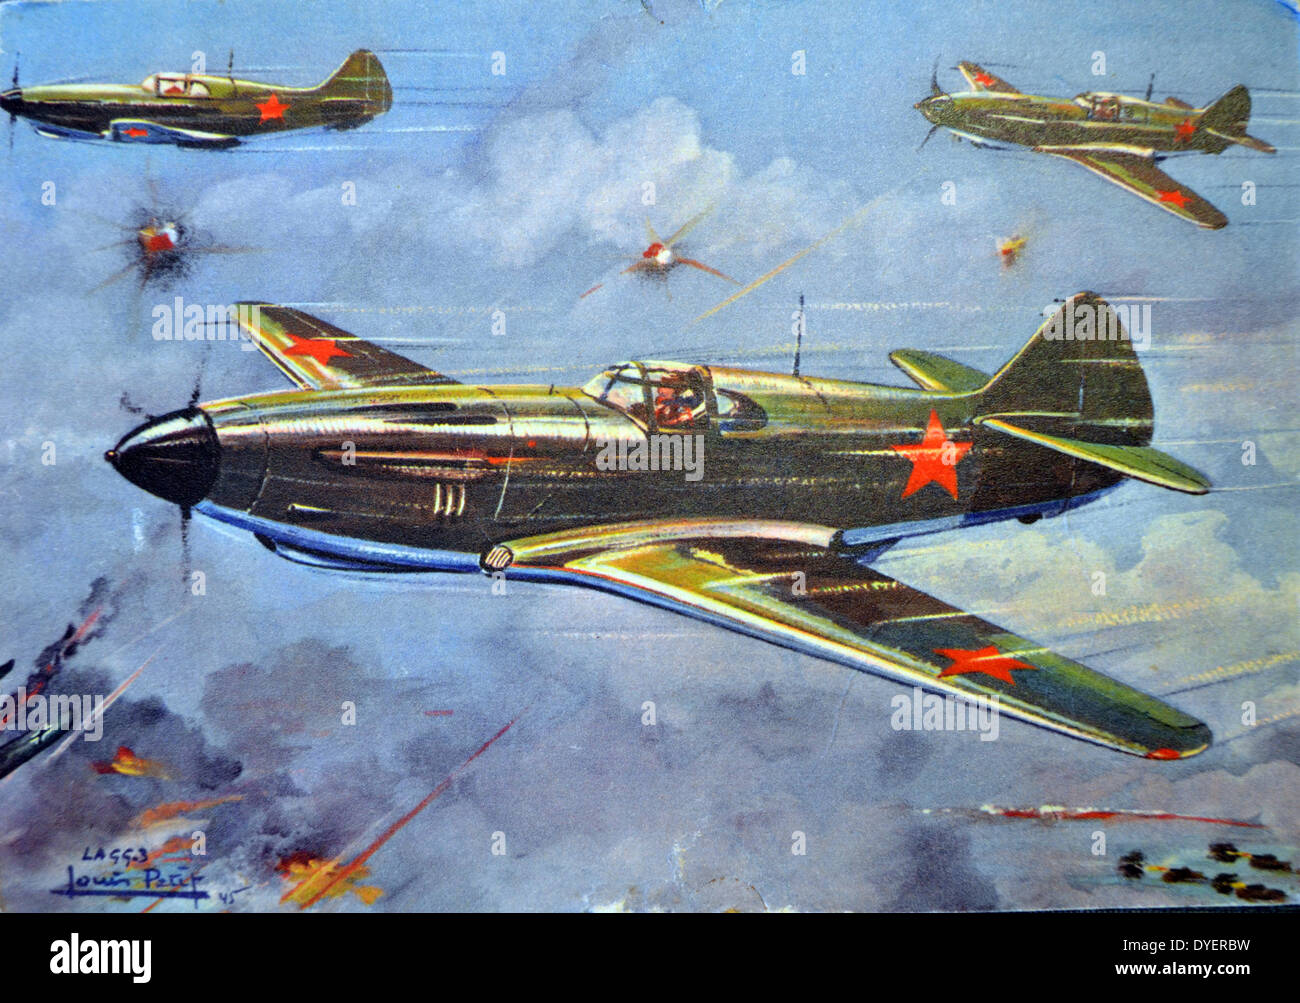 La Lavochkin-Gorbunov-Gudkov LaGG-3, aviones de combate soviéticos de la Segunda  Guerra Mundial. Es un perfeccionamiento del anterior LaGG-1, y fue uno de  los aviones más modernos disponibles para la fuerza aérea soviética